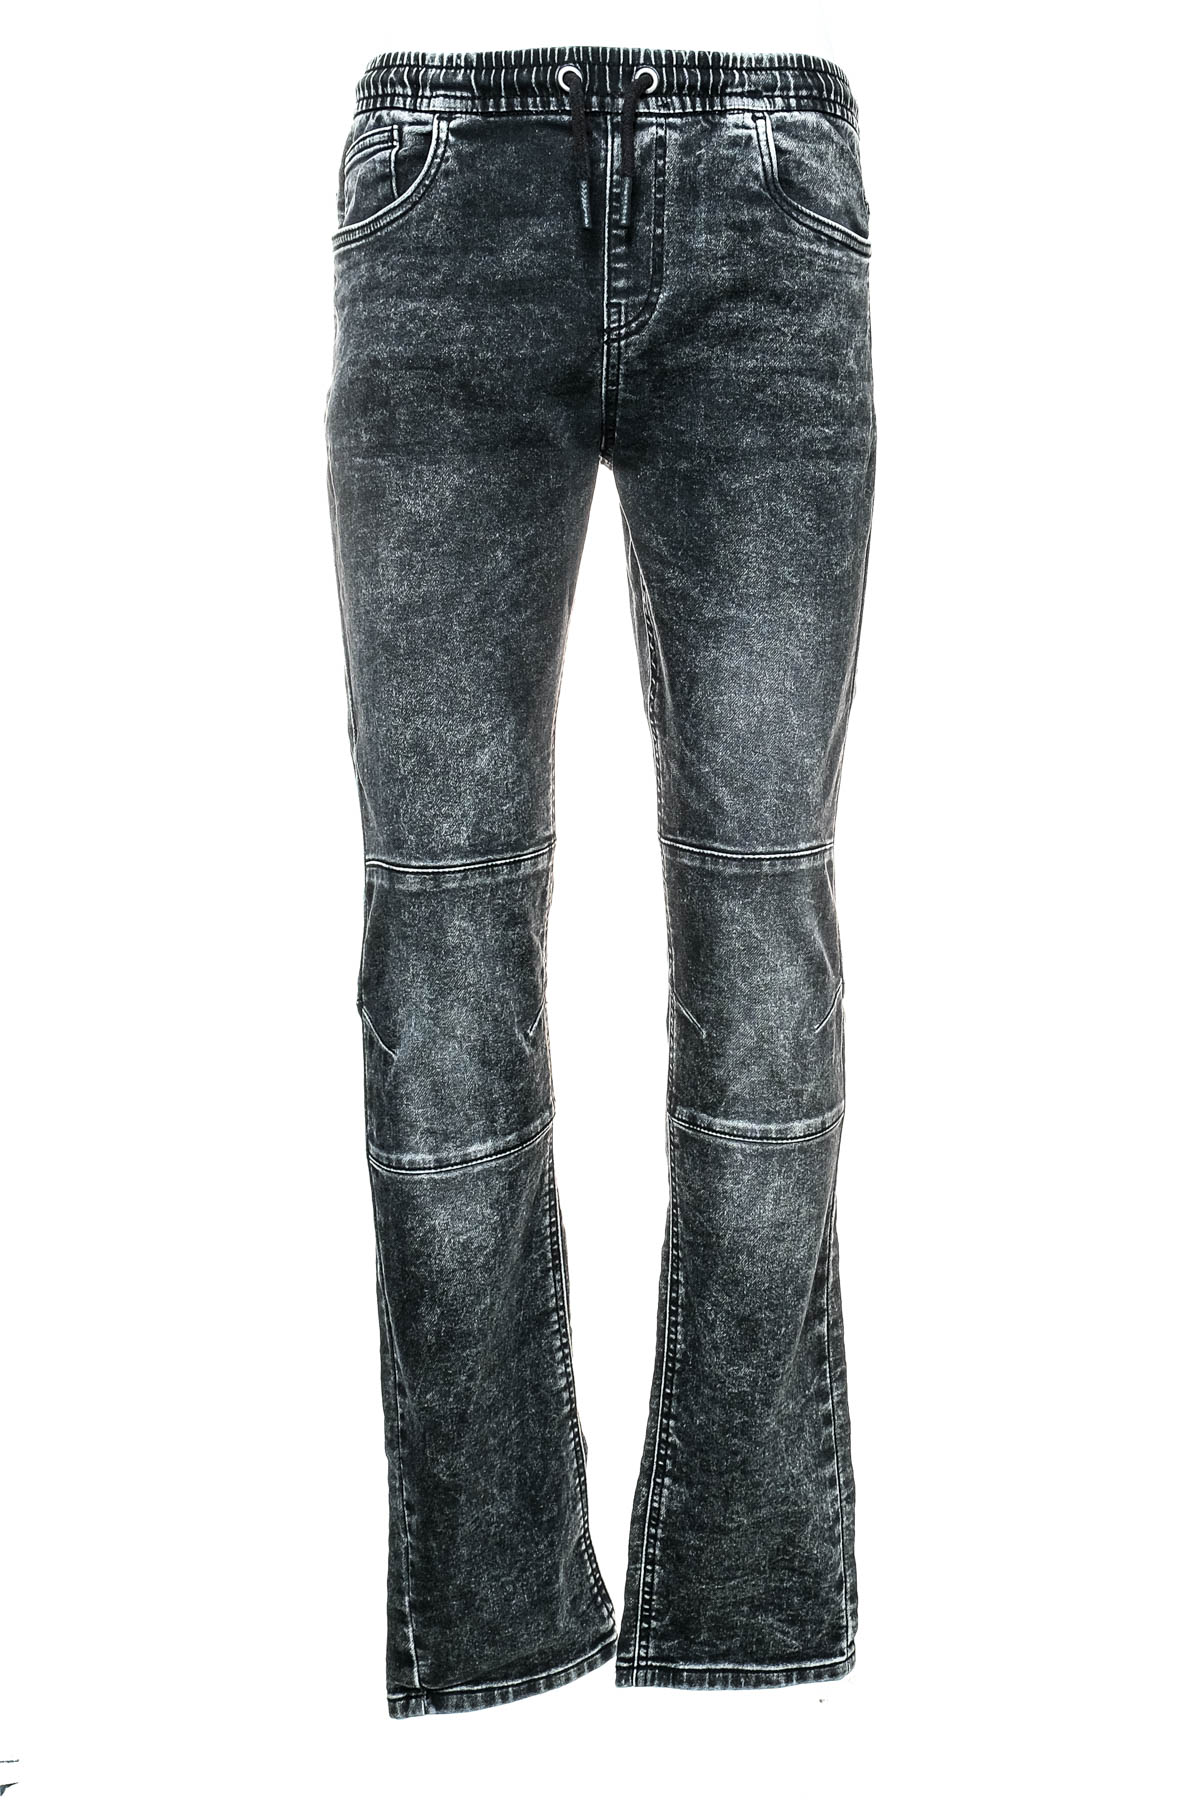 Boy jeans - C&A - 0